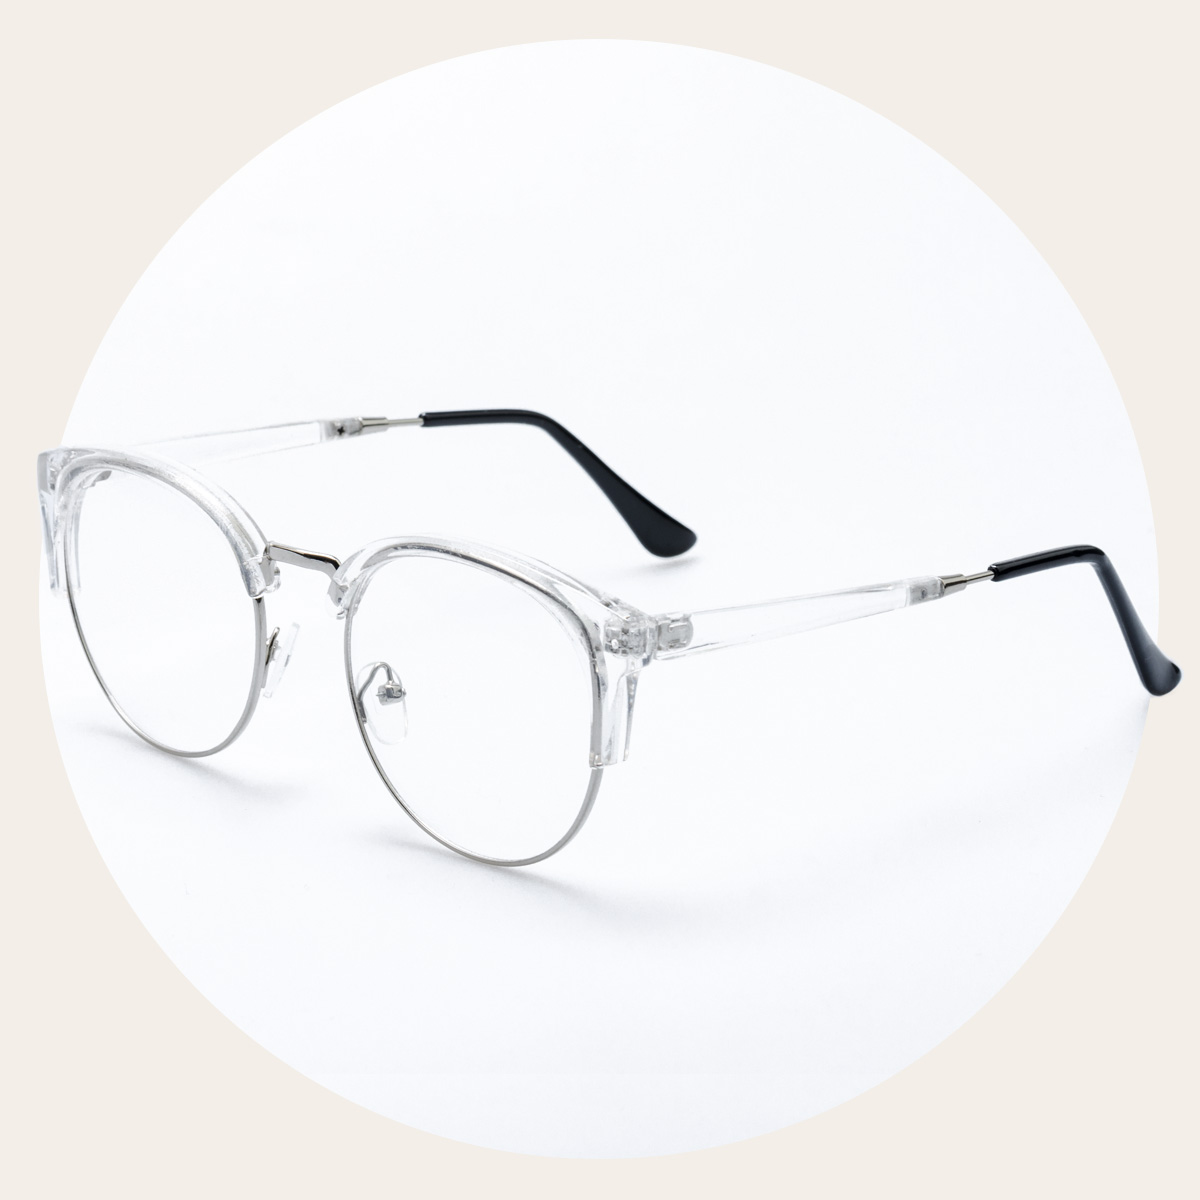 椭圆半框板材金属文艺眼镜架可配镜片潮个性眼